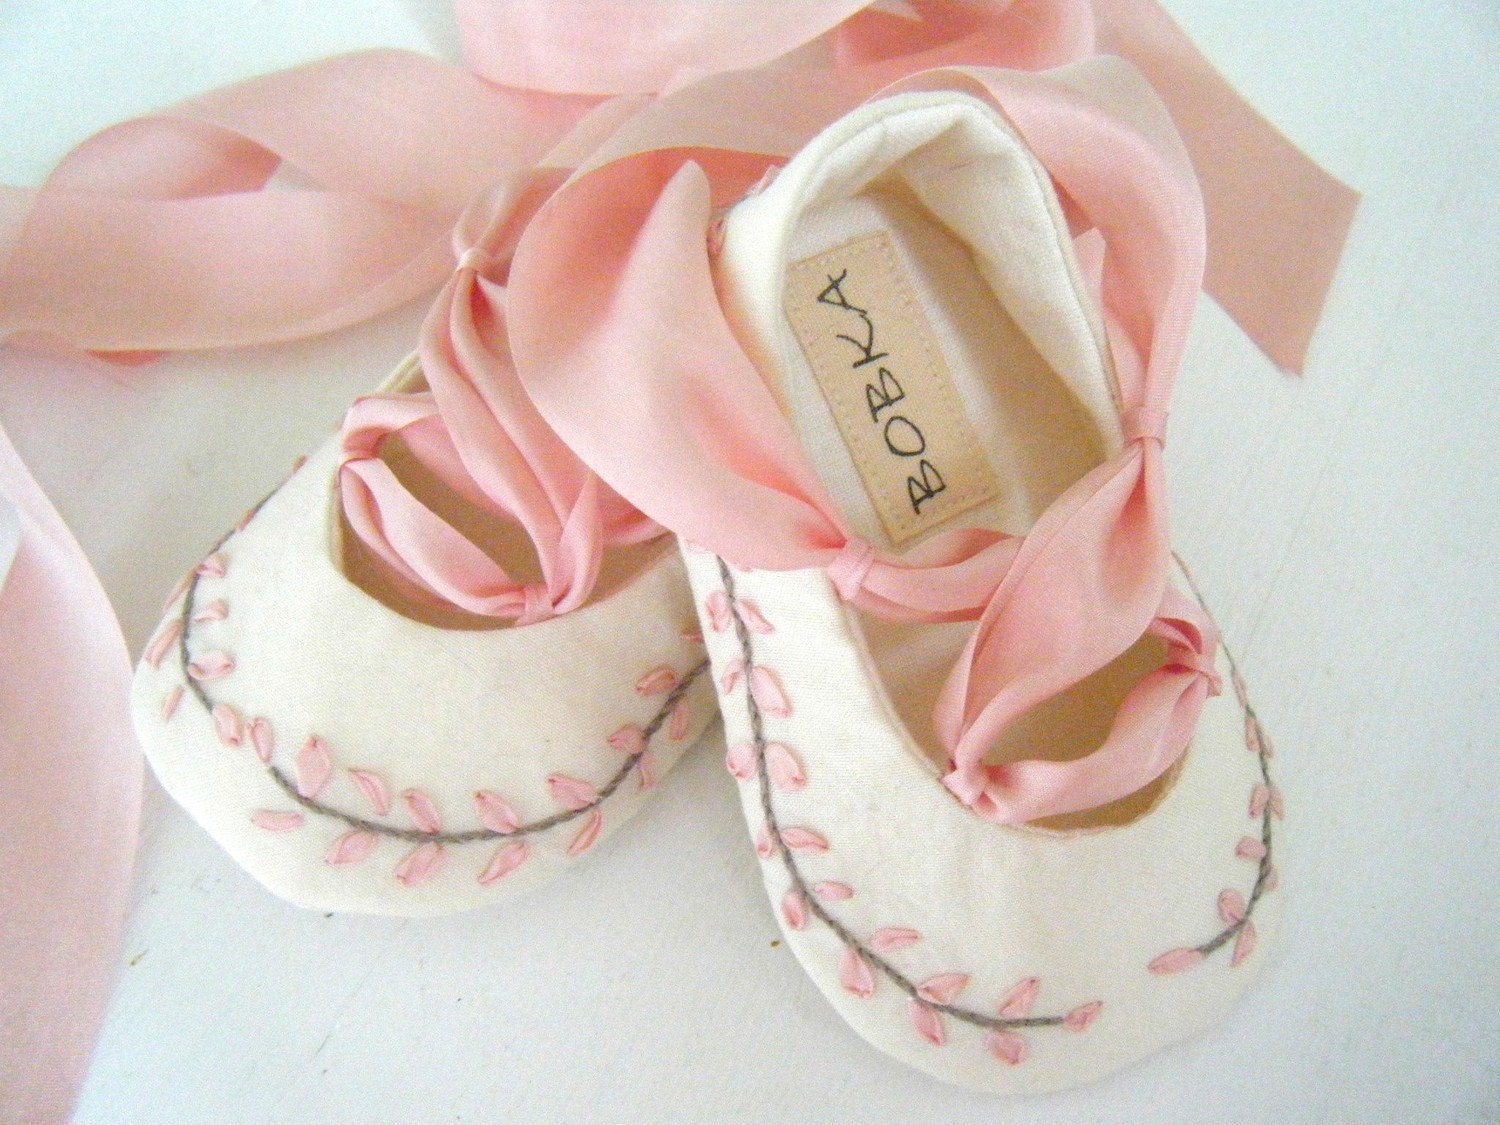 Вышитые органических шелковый розовый Джейн Остин балета тапочки обуви для вашего ребенка девушка